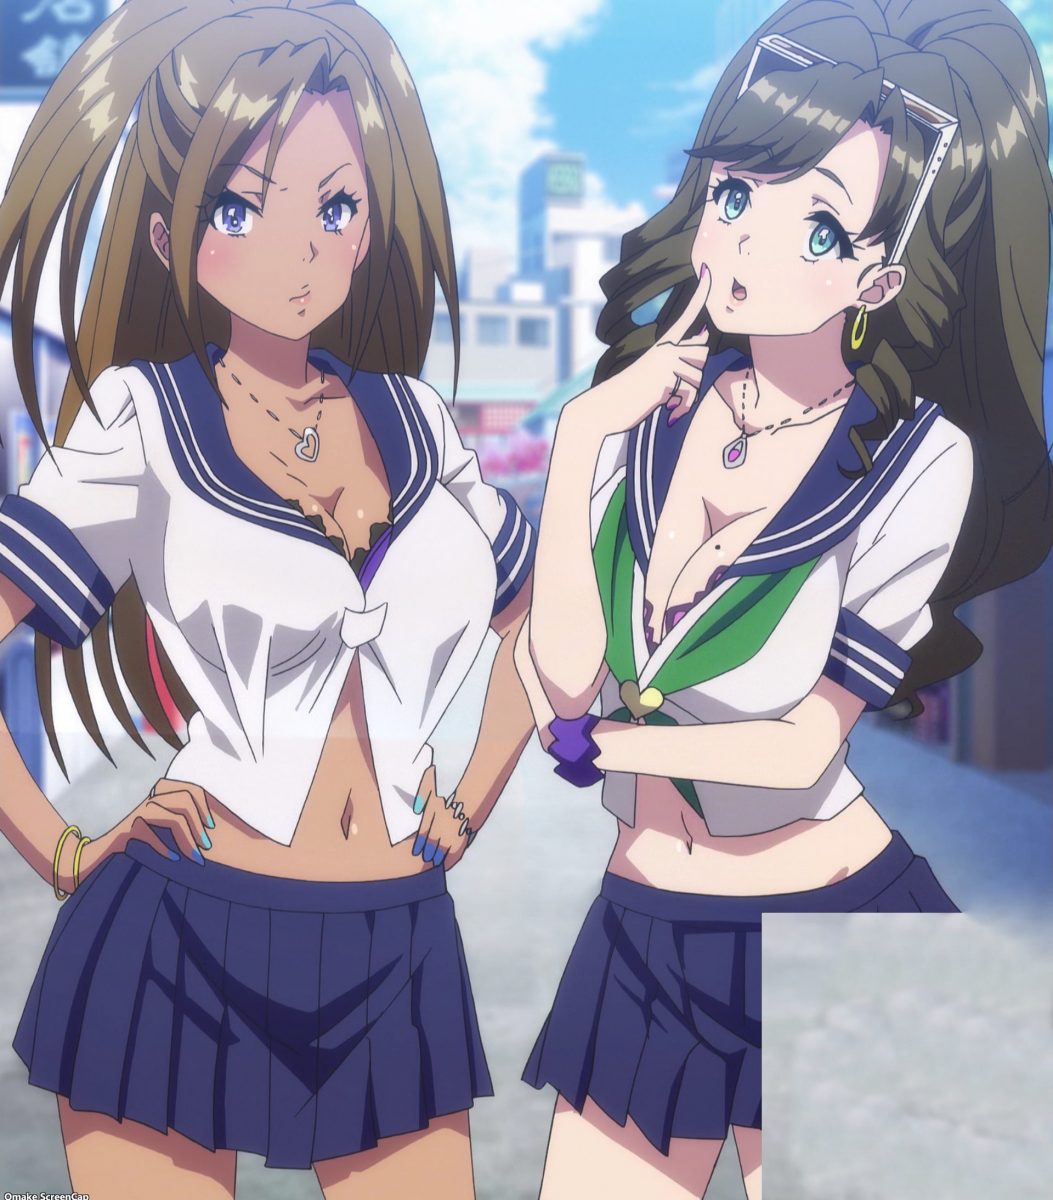 Kandagawa Jet Girls Episode 6 Manatsu And Yuzu